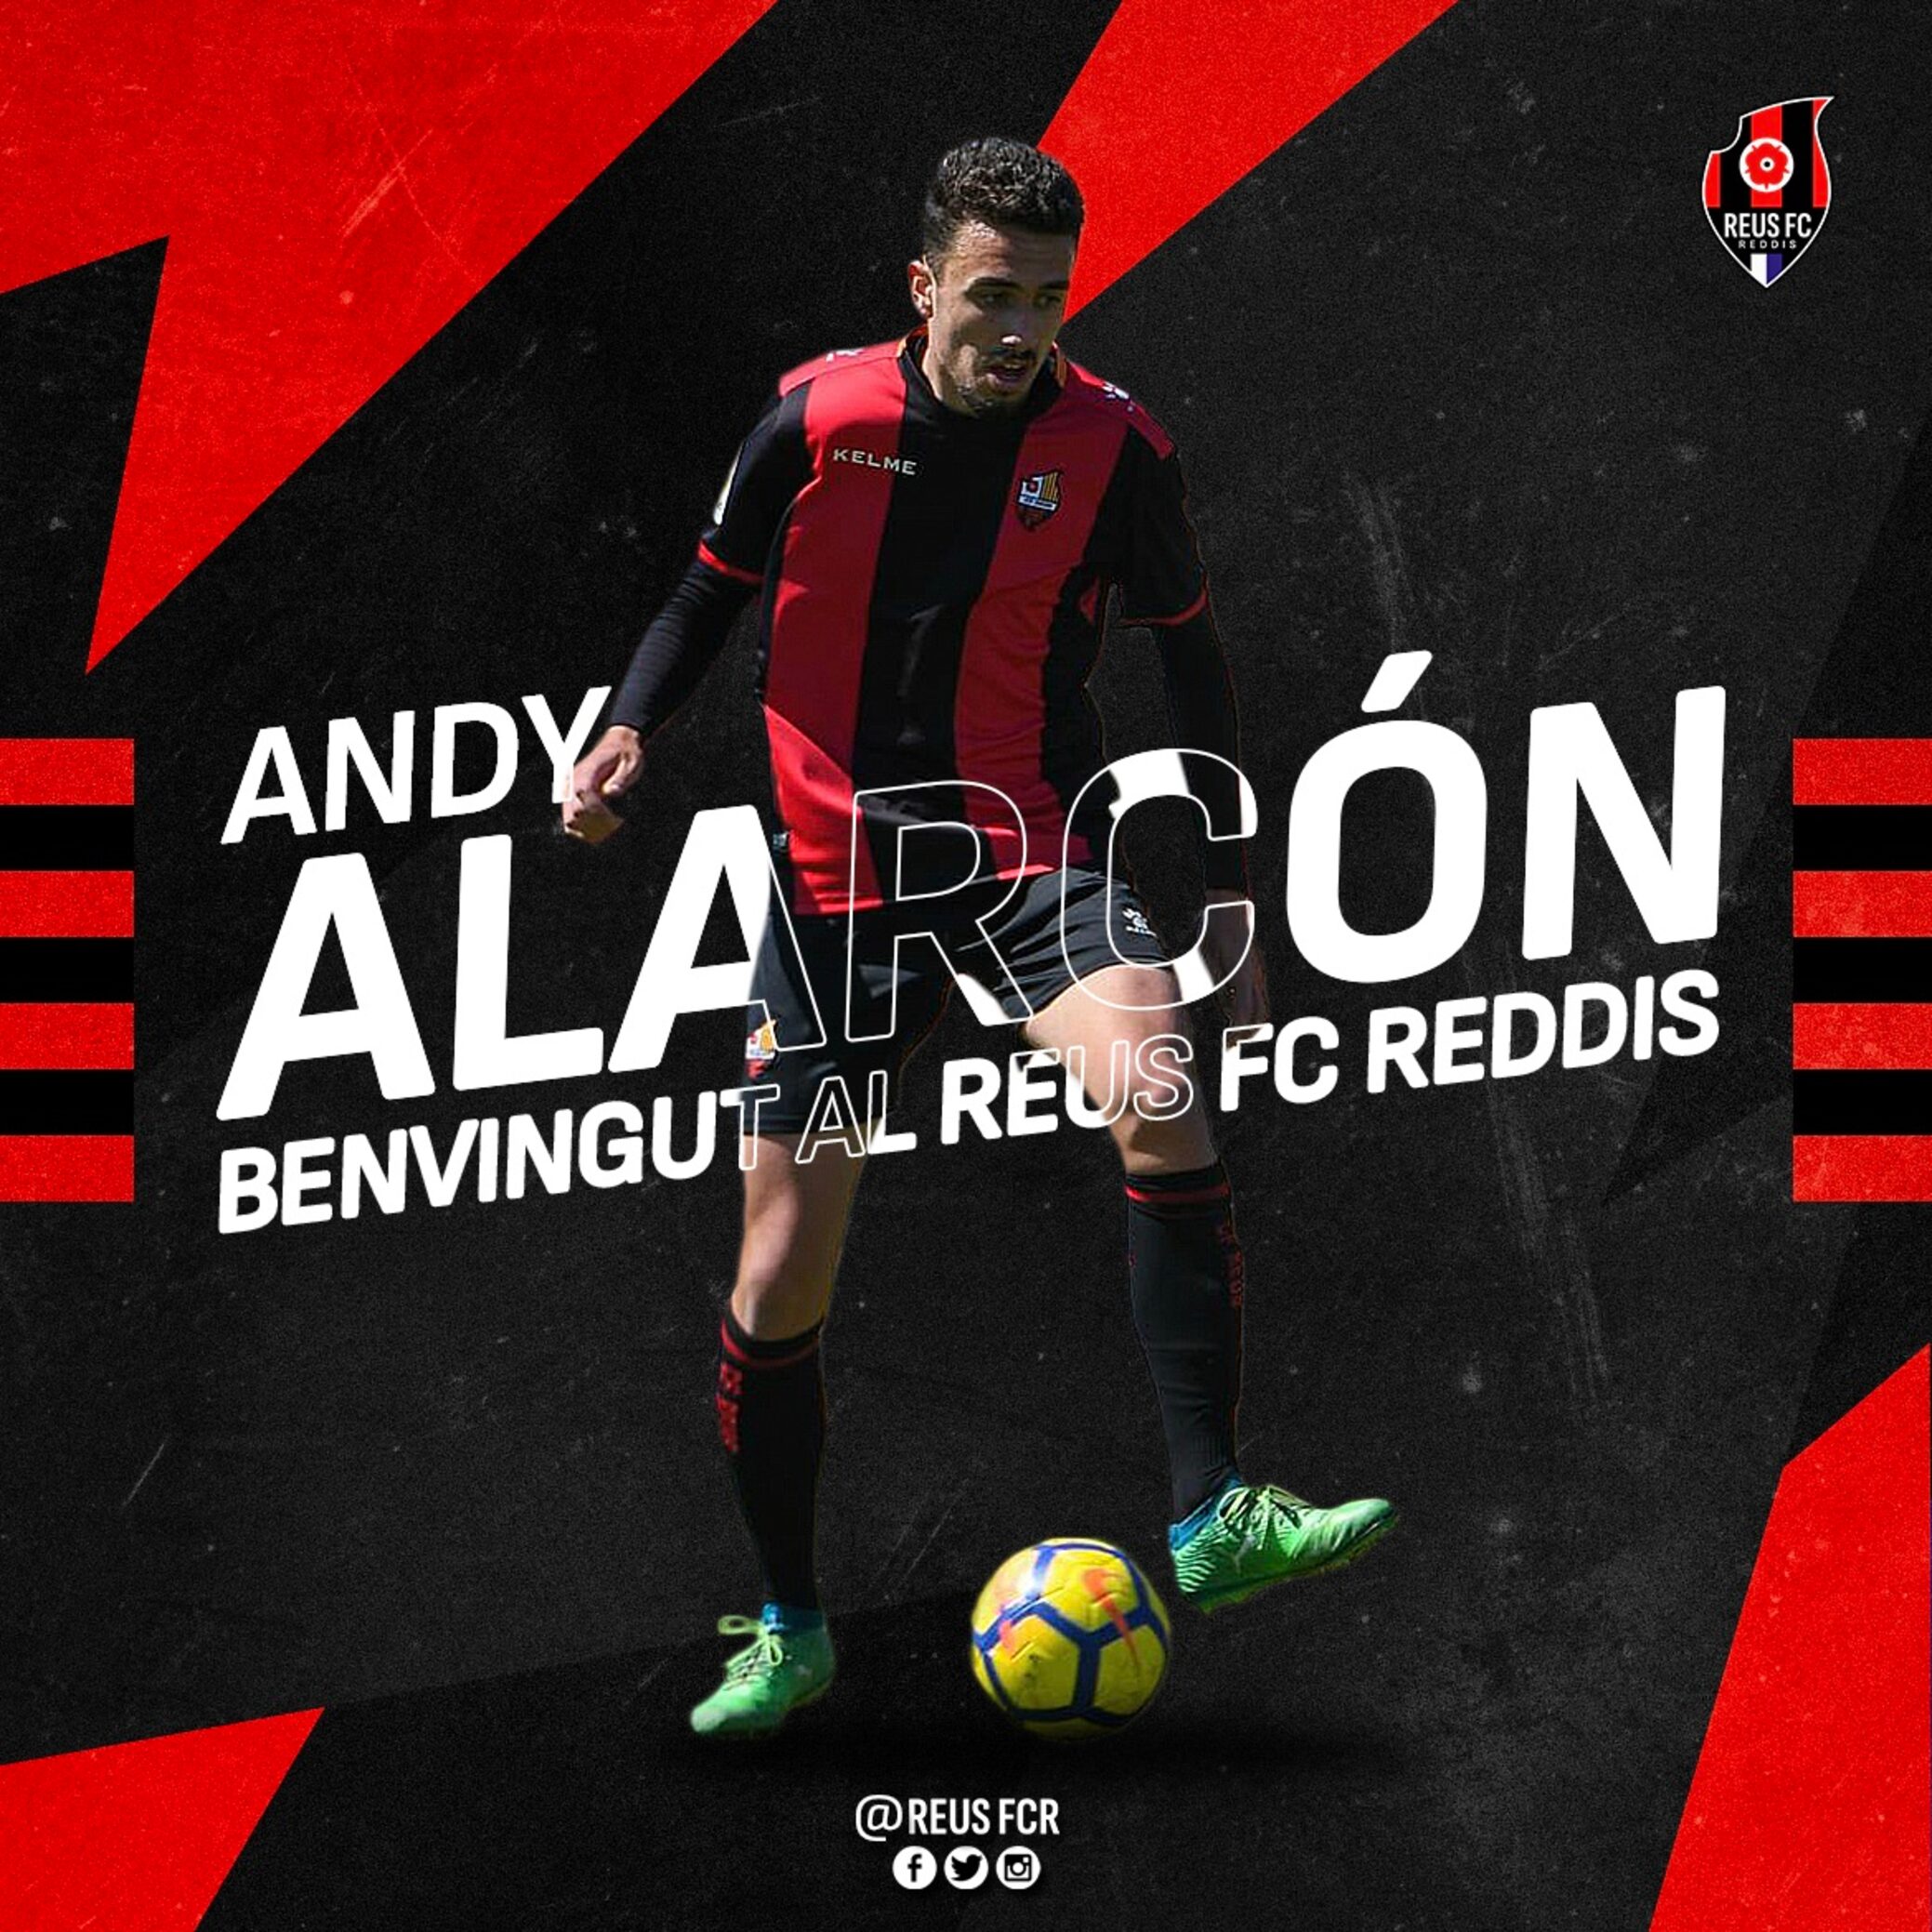 Andy Alarcón fitxa pel Reus FC Reddis